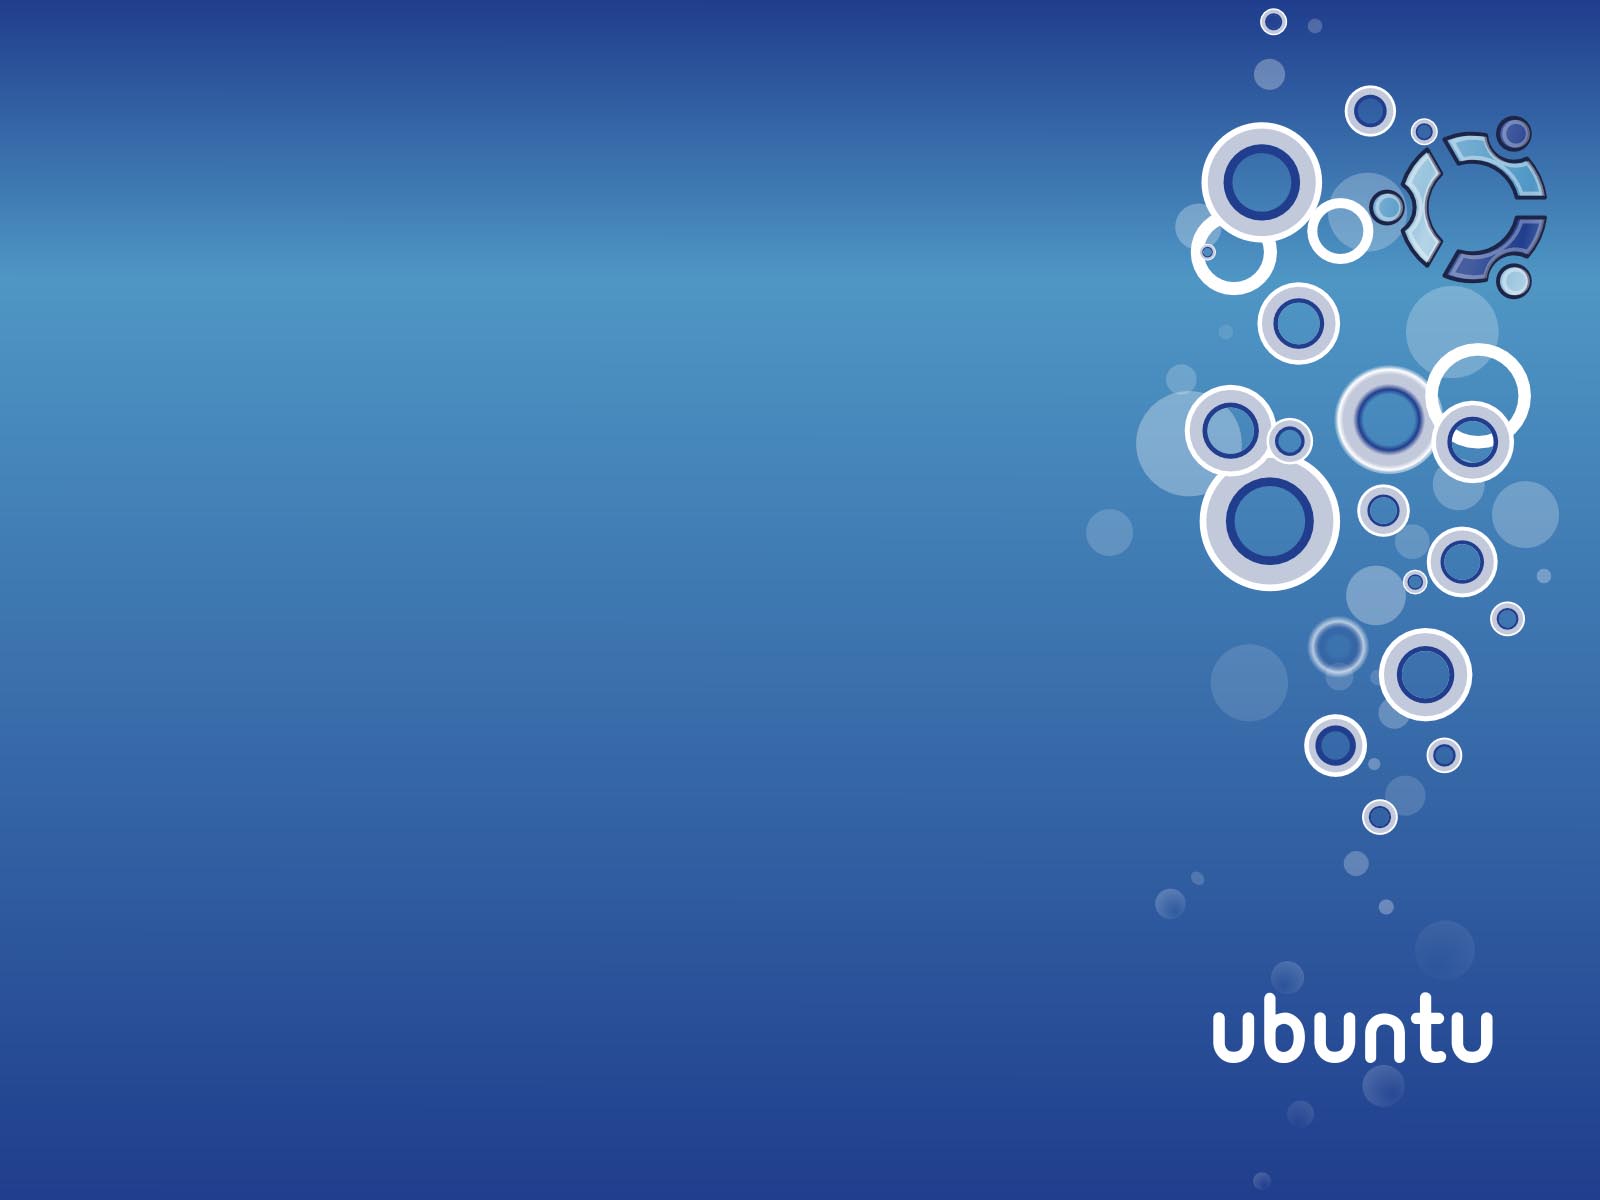 Hình nền Ubuntu màu xanh sẽ xuất hiện trên máy tính của bạn như một danh sách khác biệt các Wallpapers Ubuntu. Với thiết kế độc đáo, màu xanh sẽ mang đến một phong cách tuyệt vời cho màn hình máy tính của bạn. Hãy để ý đến chi tiết tuyệt vời của hình nền Ubuntu màu xanh!